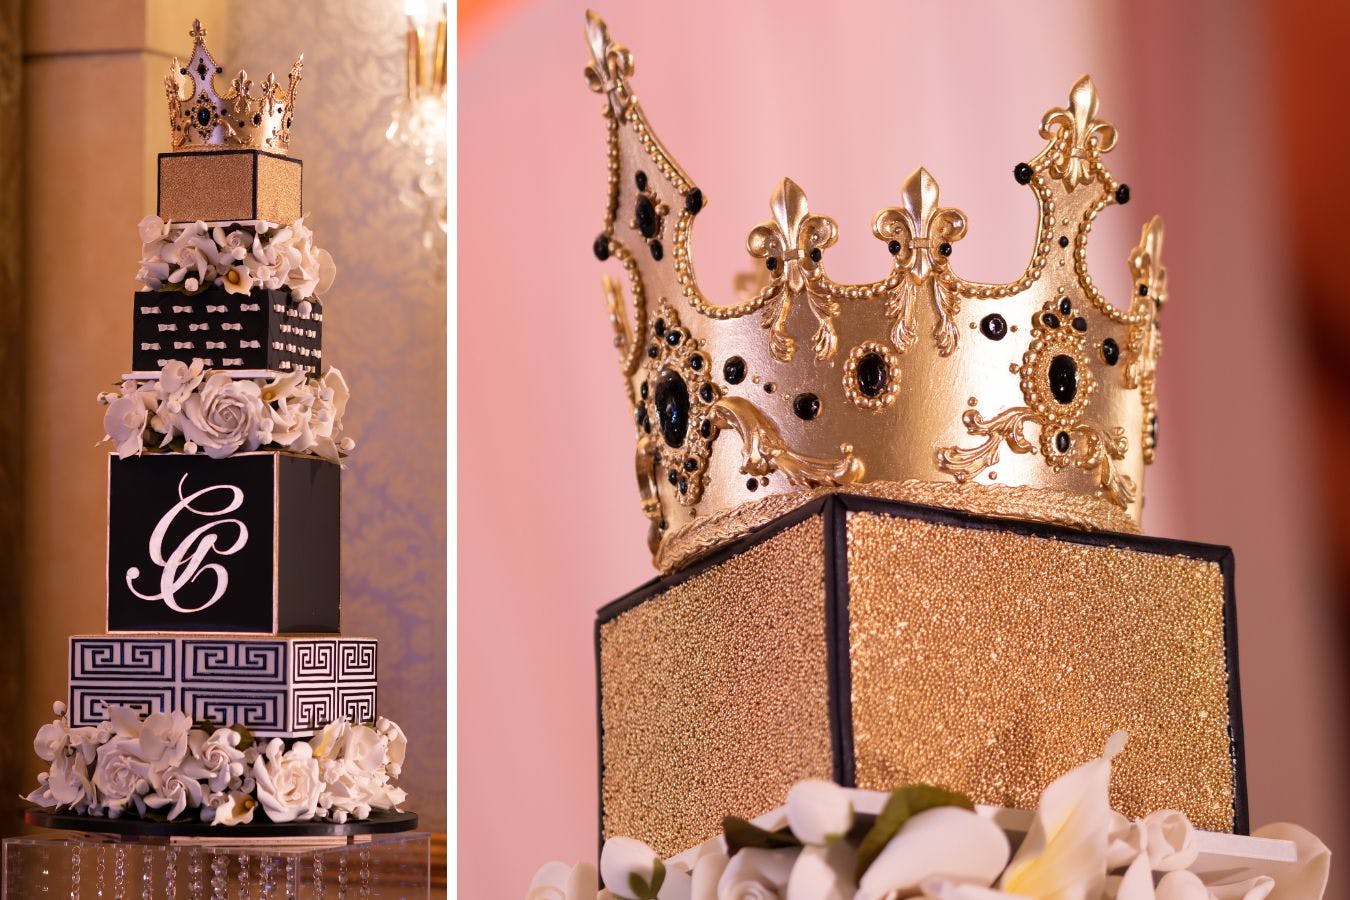 Golden crowned cake at masked ball celebration.